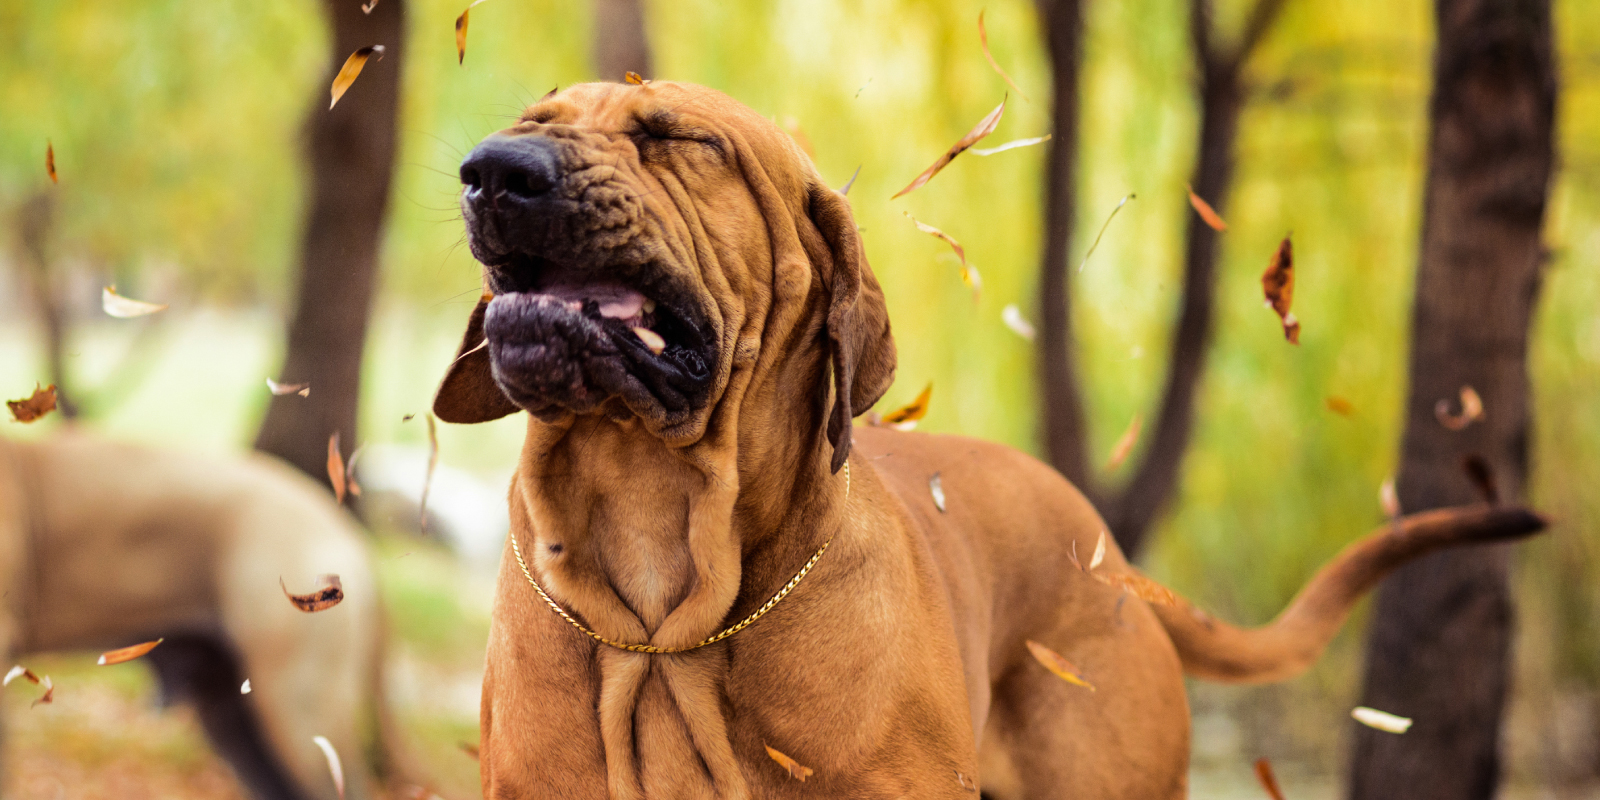 Alergia primaveral: Los síntomas y efectos en las mascotas